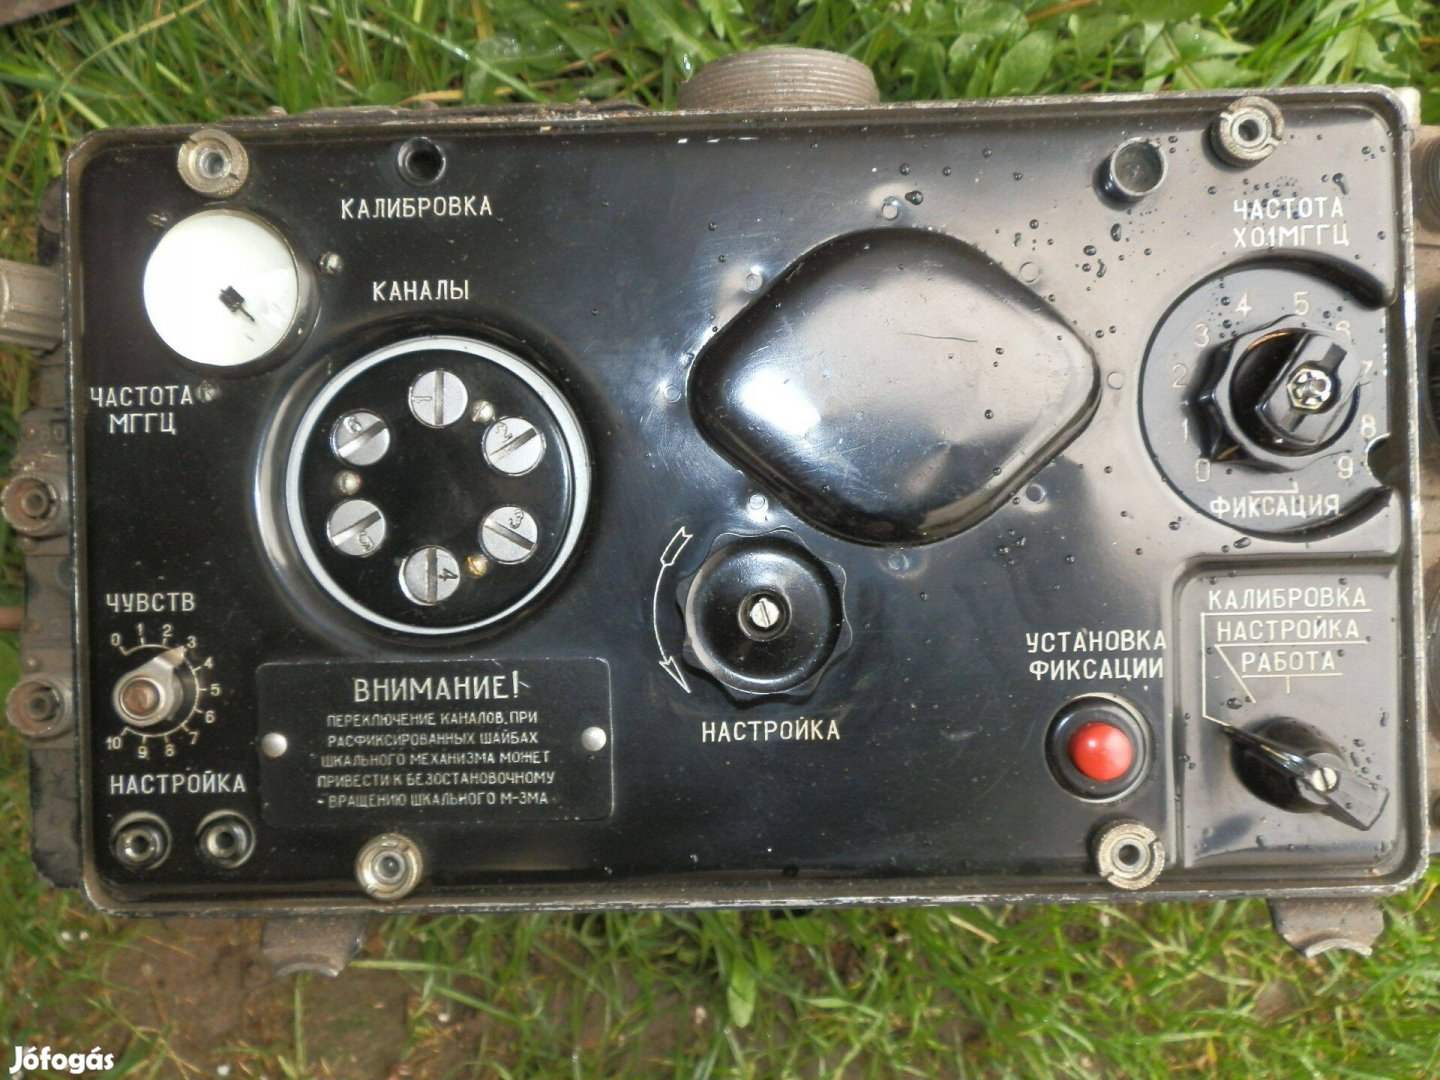 Szovjet repülőgép rádió gyűjteménybe